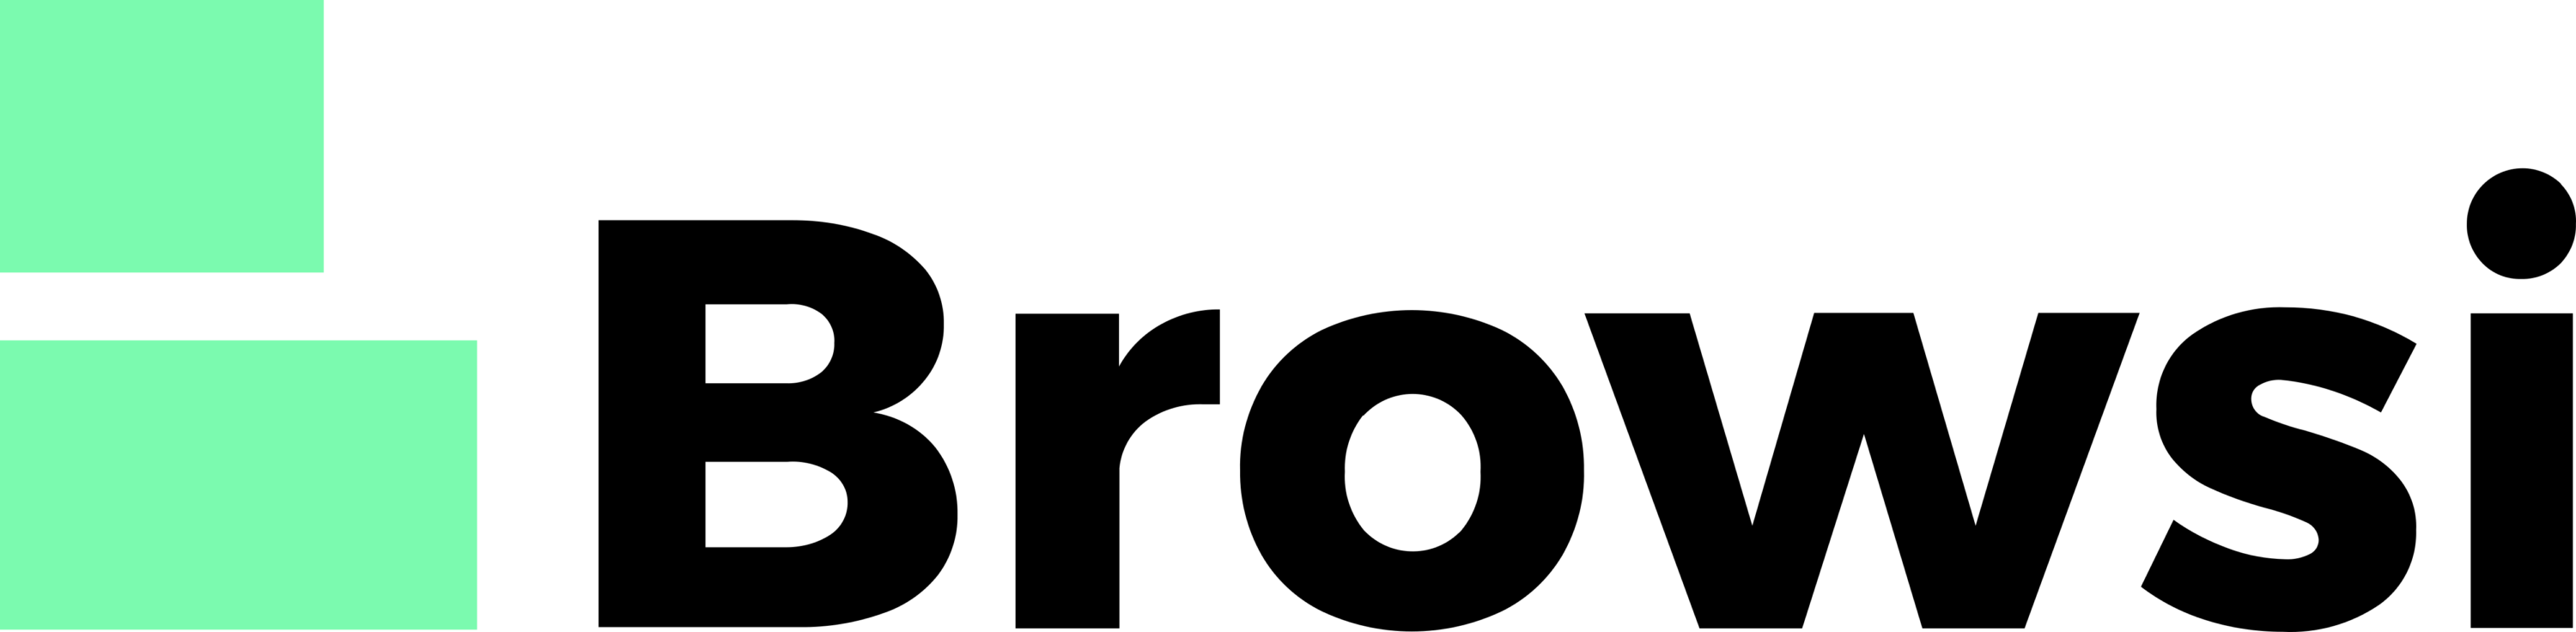 Browsi Logo